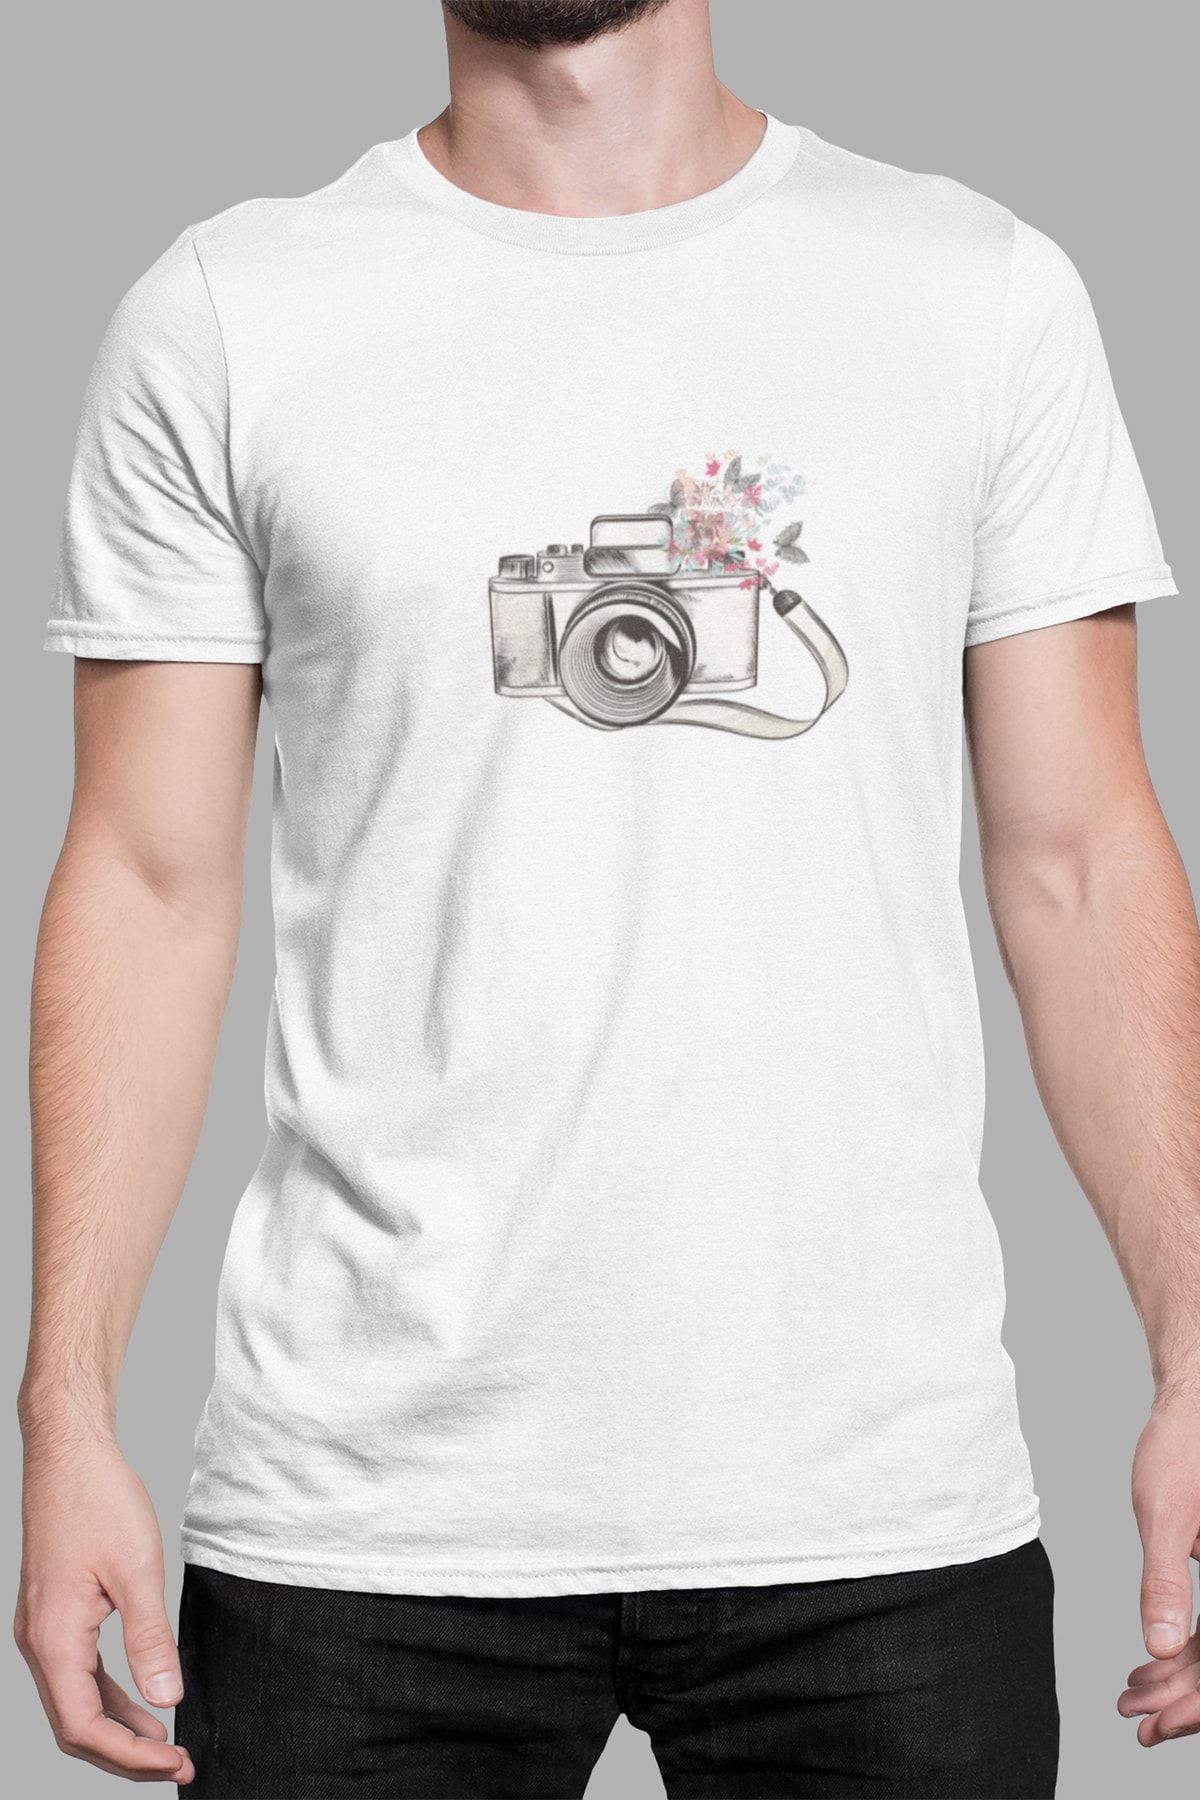 Kio Tasarım Erkek Eski Retro Analog Fotoğraf Makinası Baskılı T-Shirt